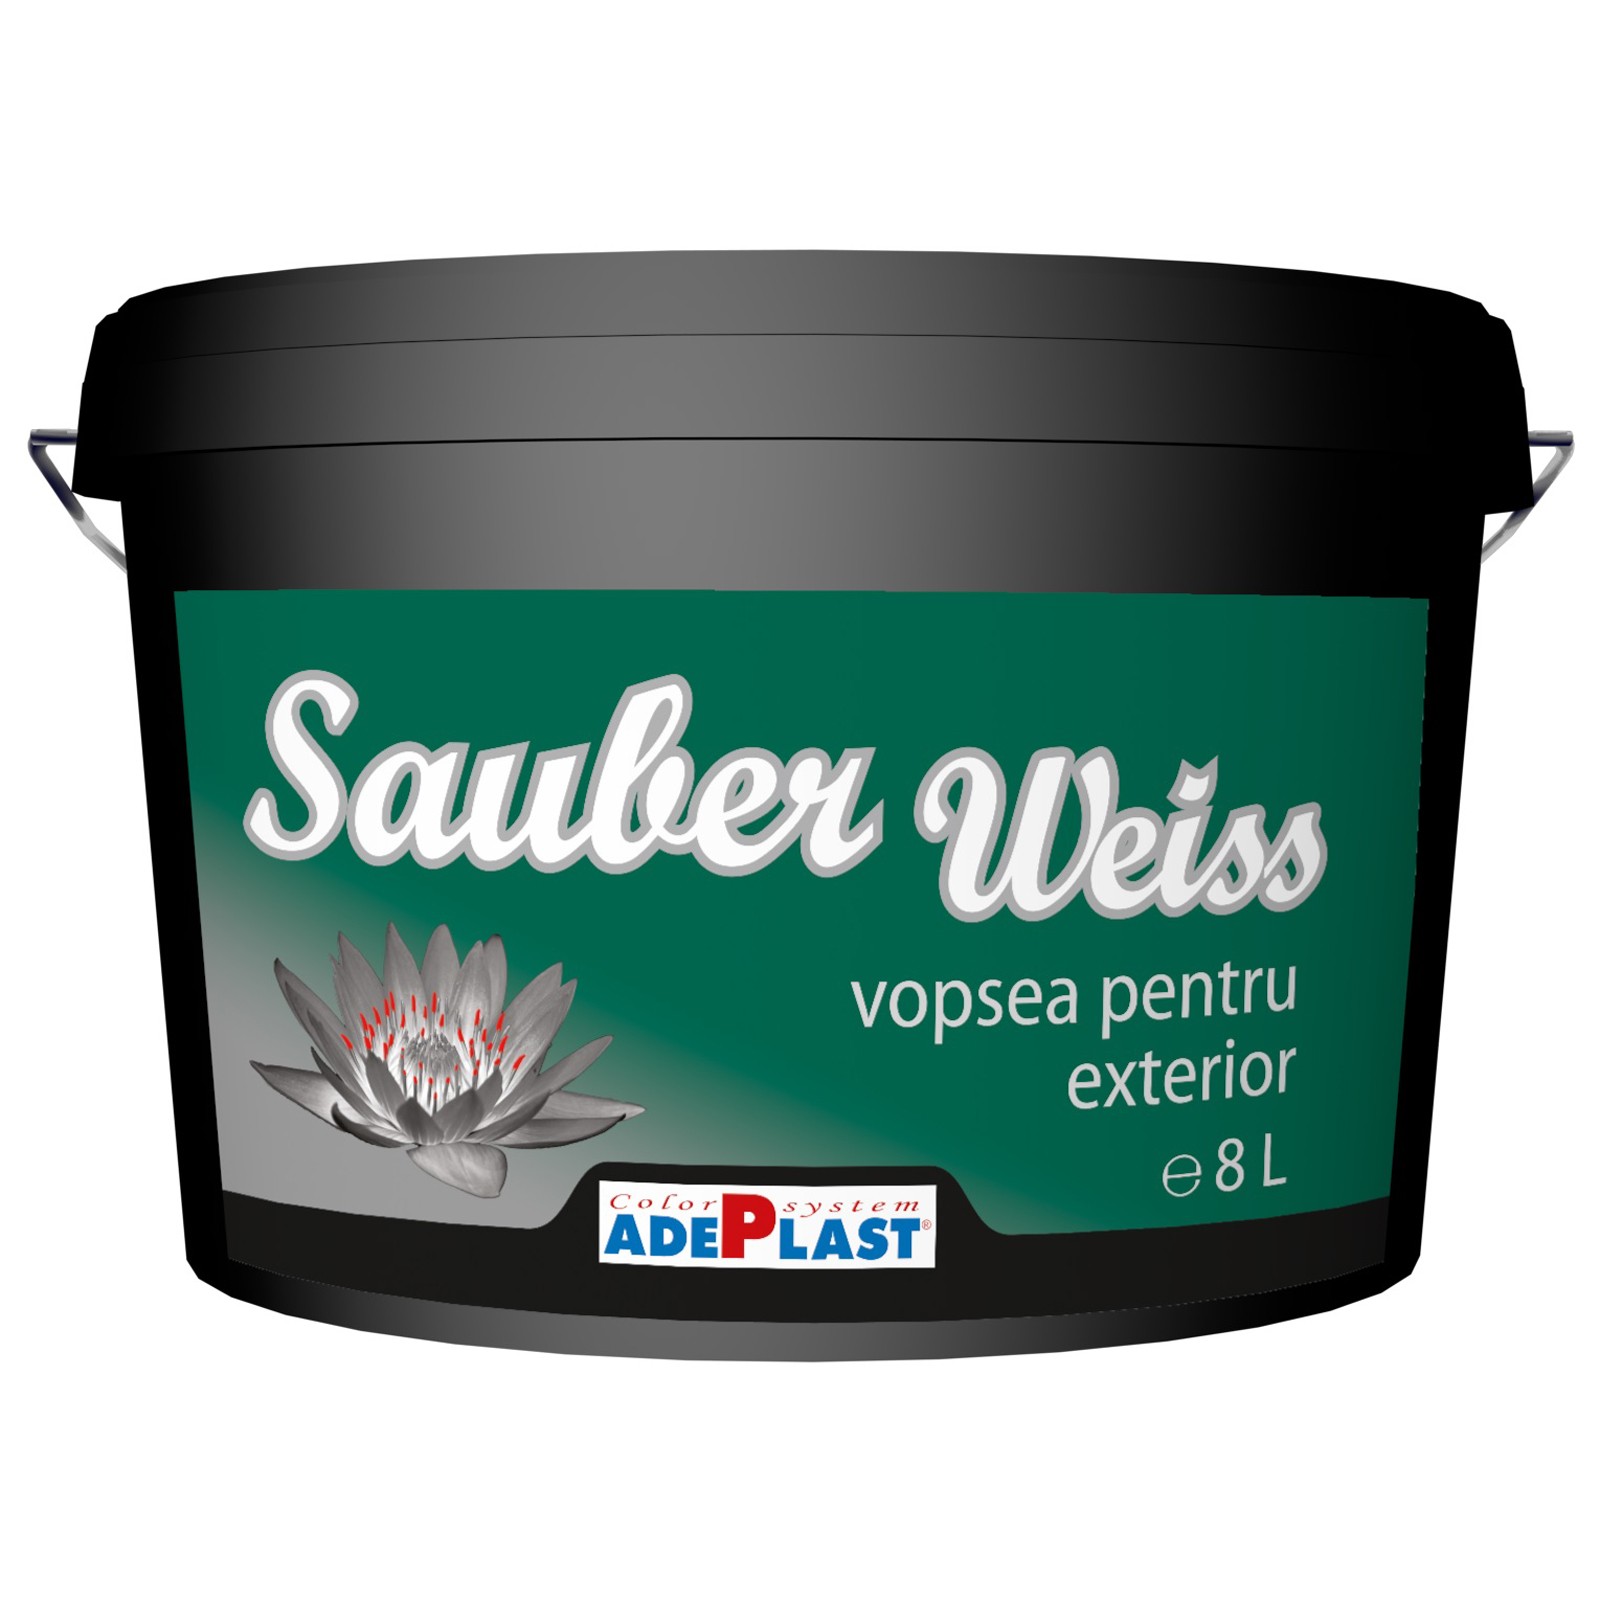 Vopseluri - Vopsea lavabila pentru exterior Adeplast Sauber Weiss alba 3L, maxbau.ro